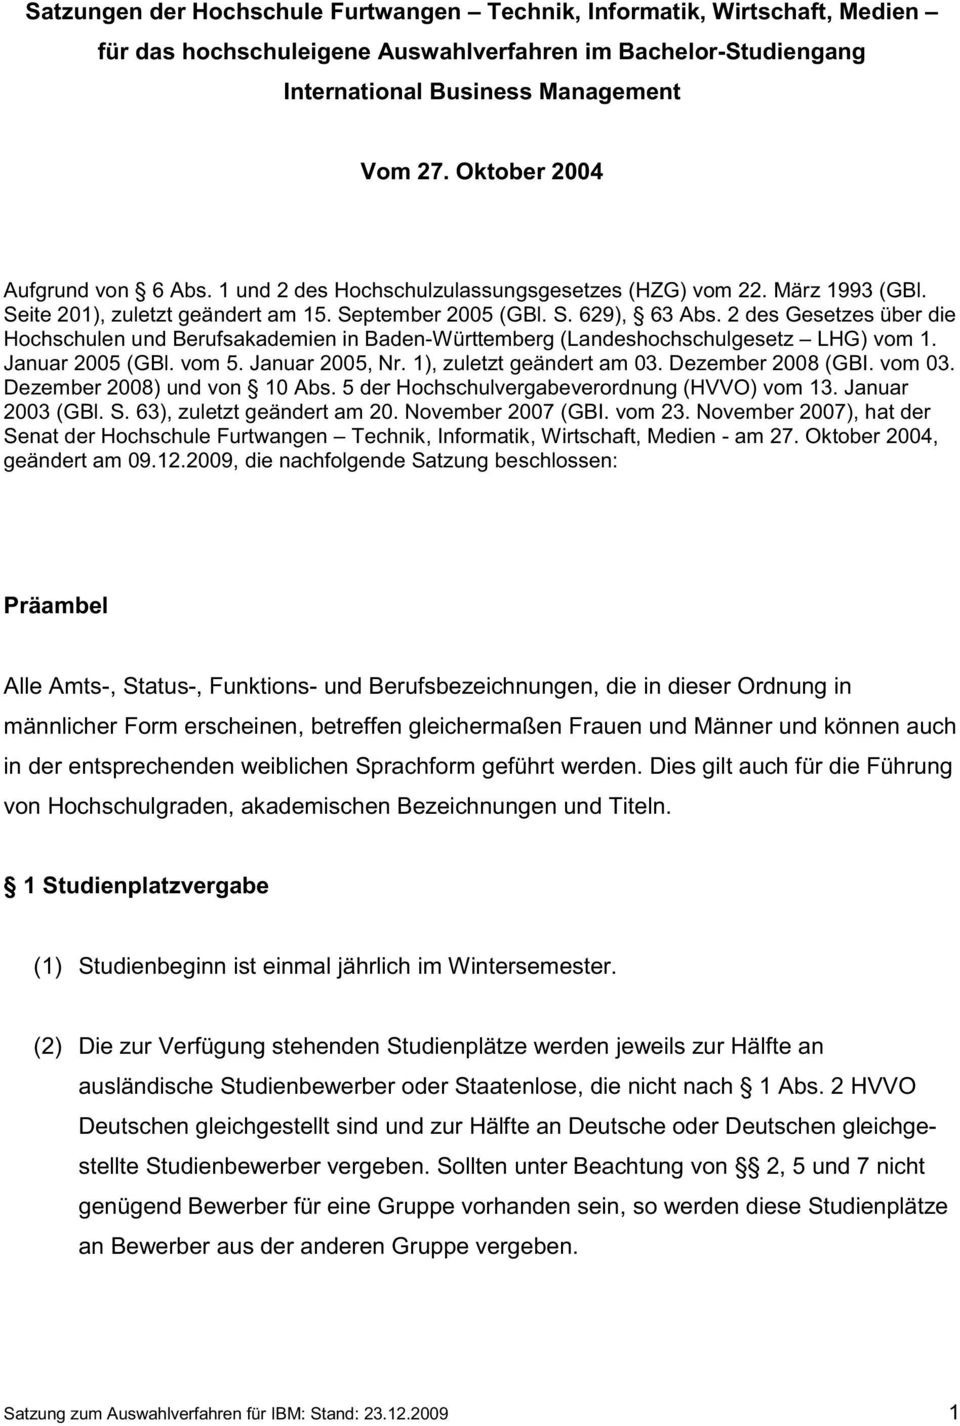 2 des Gesetzes über die Hochschulen und Berufsakademien in Baden-Württemberg (Landeshochschulgesetz LHG) vom 1. Januar 2005 (GBl. vom 5. Januar 2005, Nr. 1), zuletzt geändert am 03.